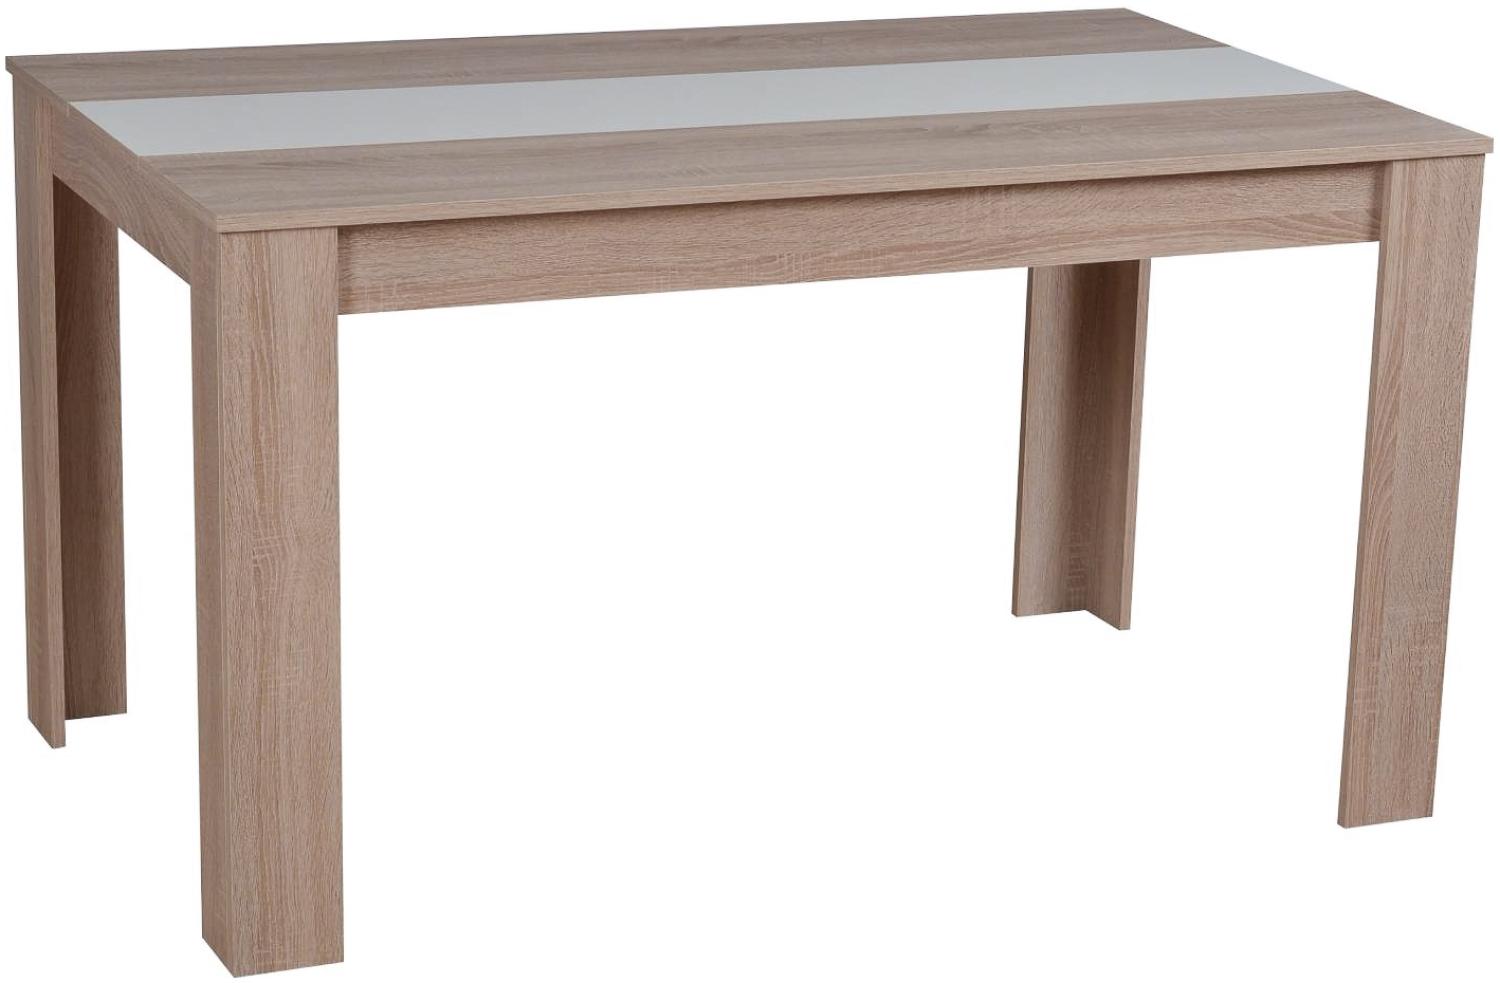 Esstisch Esszimmertisch Holztisch Küchentisch 135x80 cm Holz Massiv Eiche Weiß Braun Bild 1